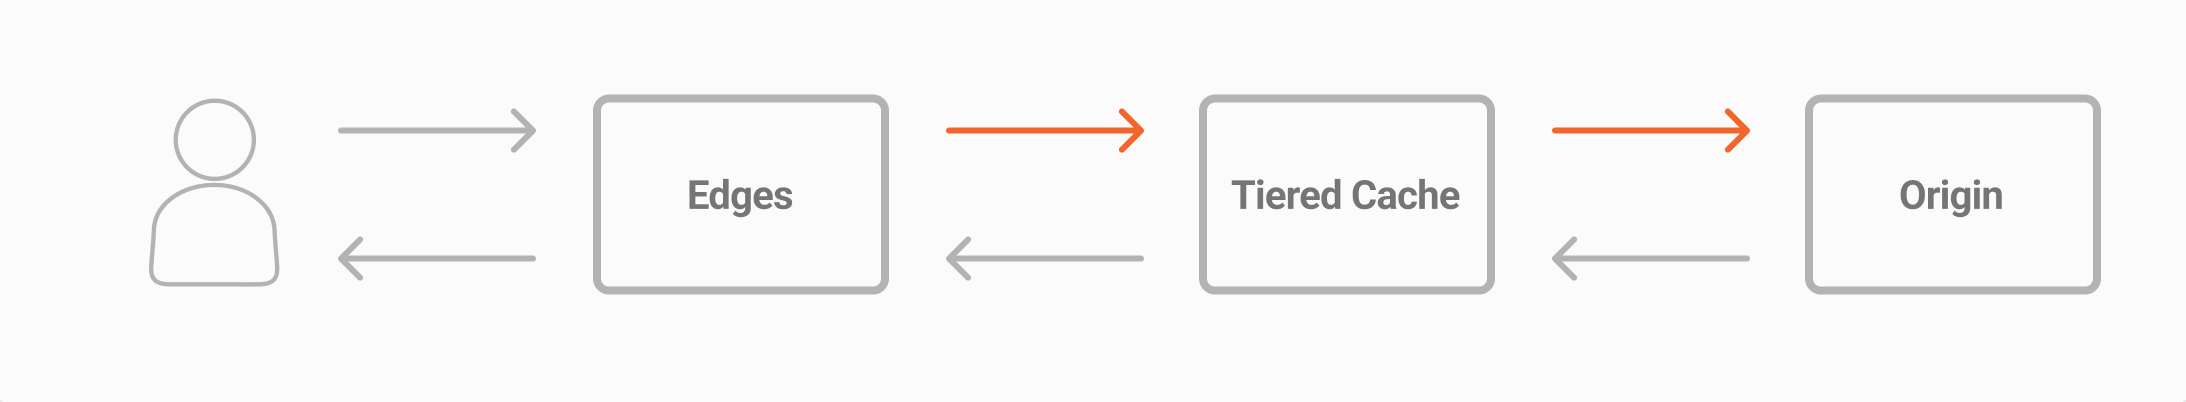 Fluxo de informação do gráfico Tiered Cache para Tiered Cache In, representando os dados sendo transferidos dos edges para a camada tiered cache e da Tiered Cache para a origem do cliente.